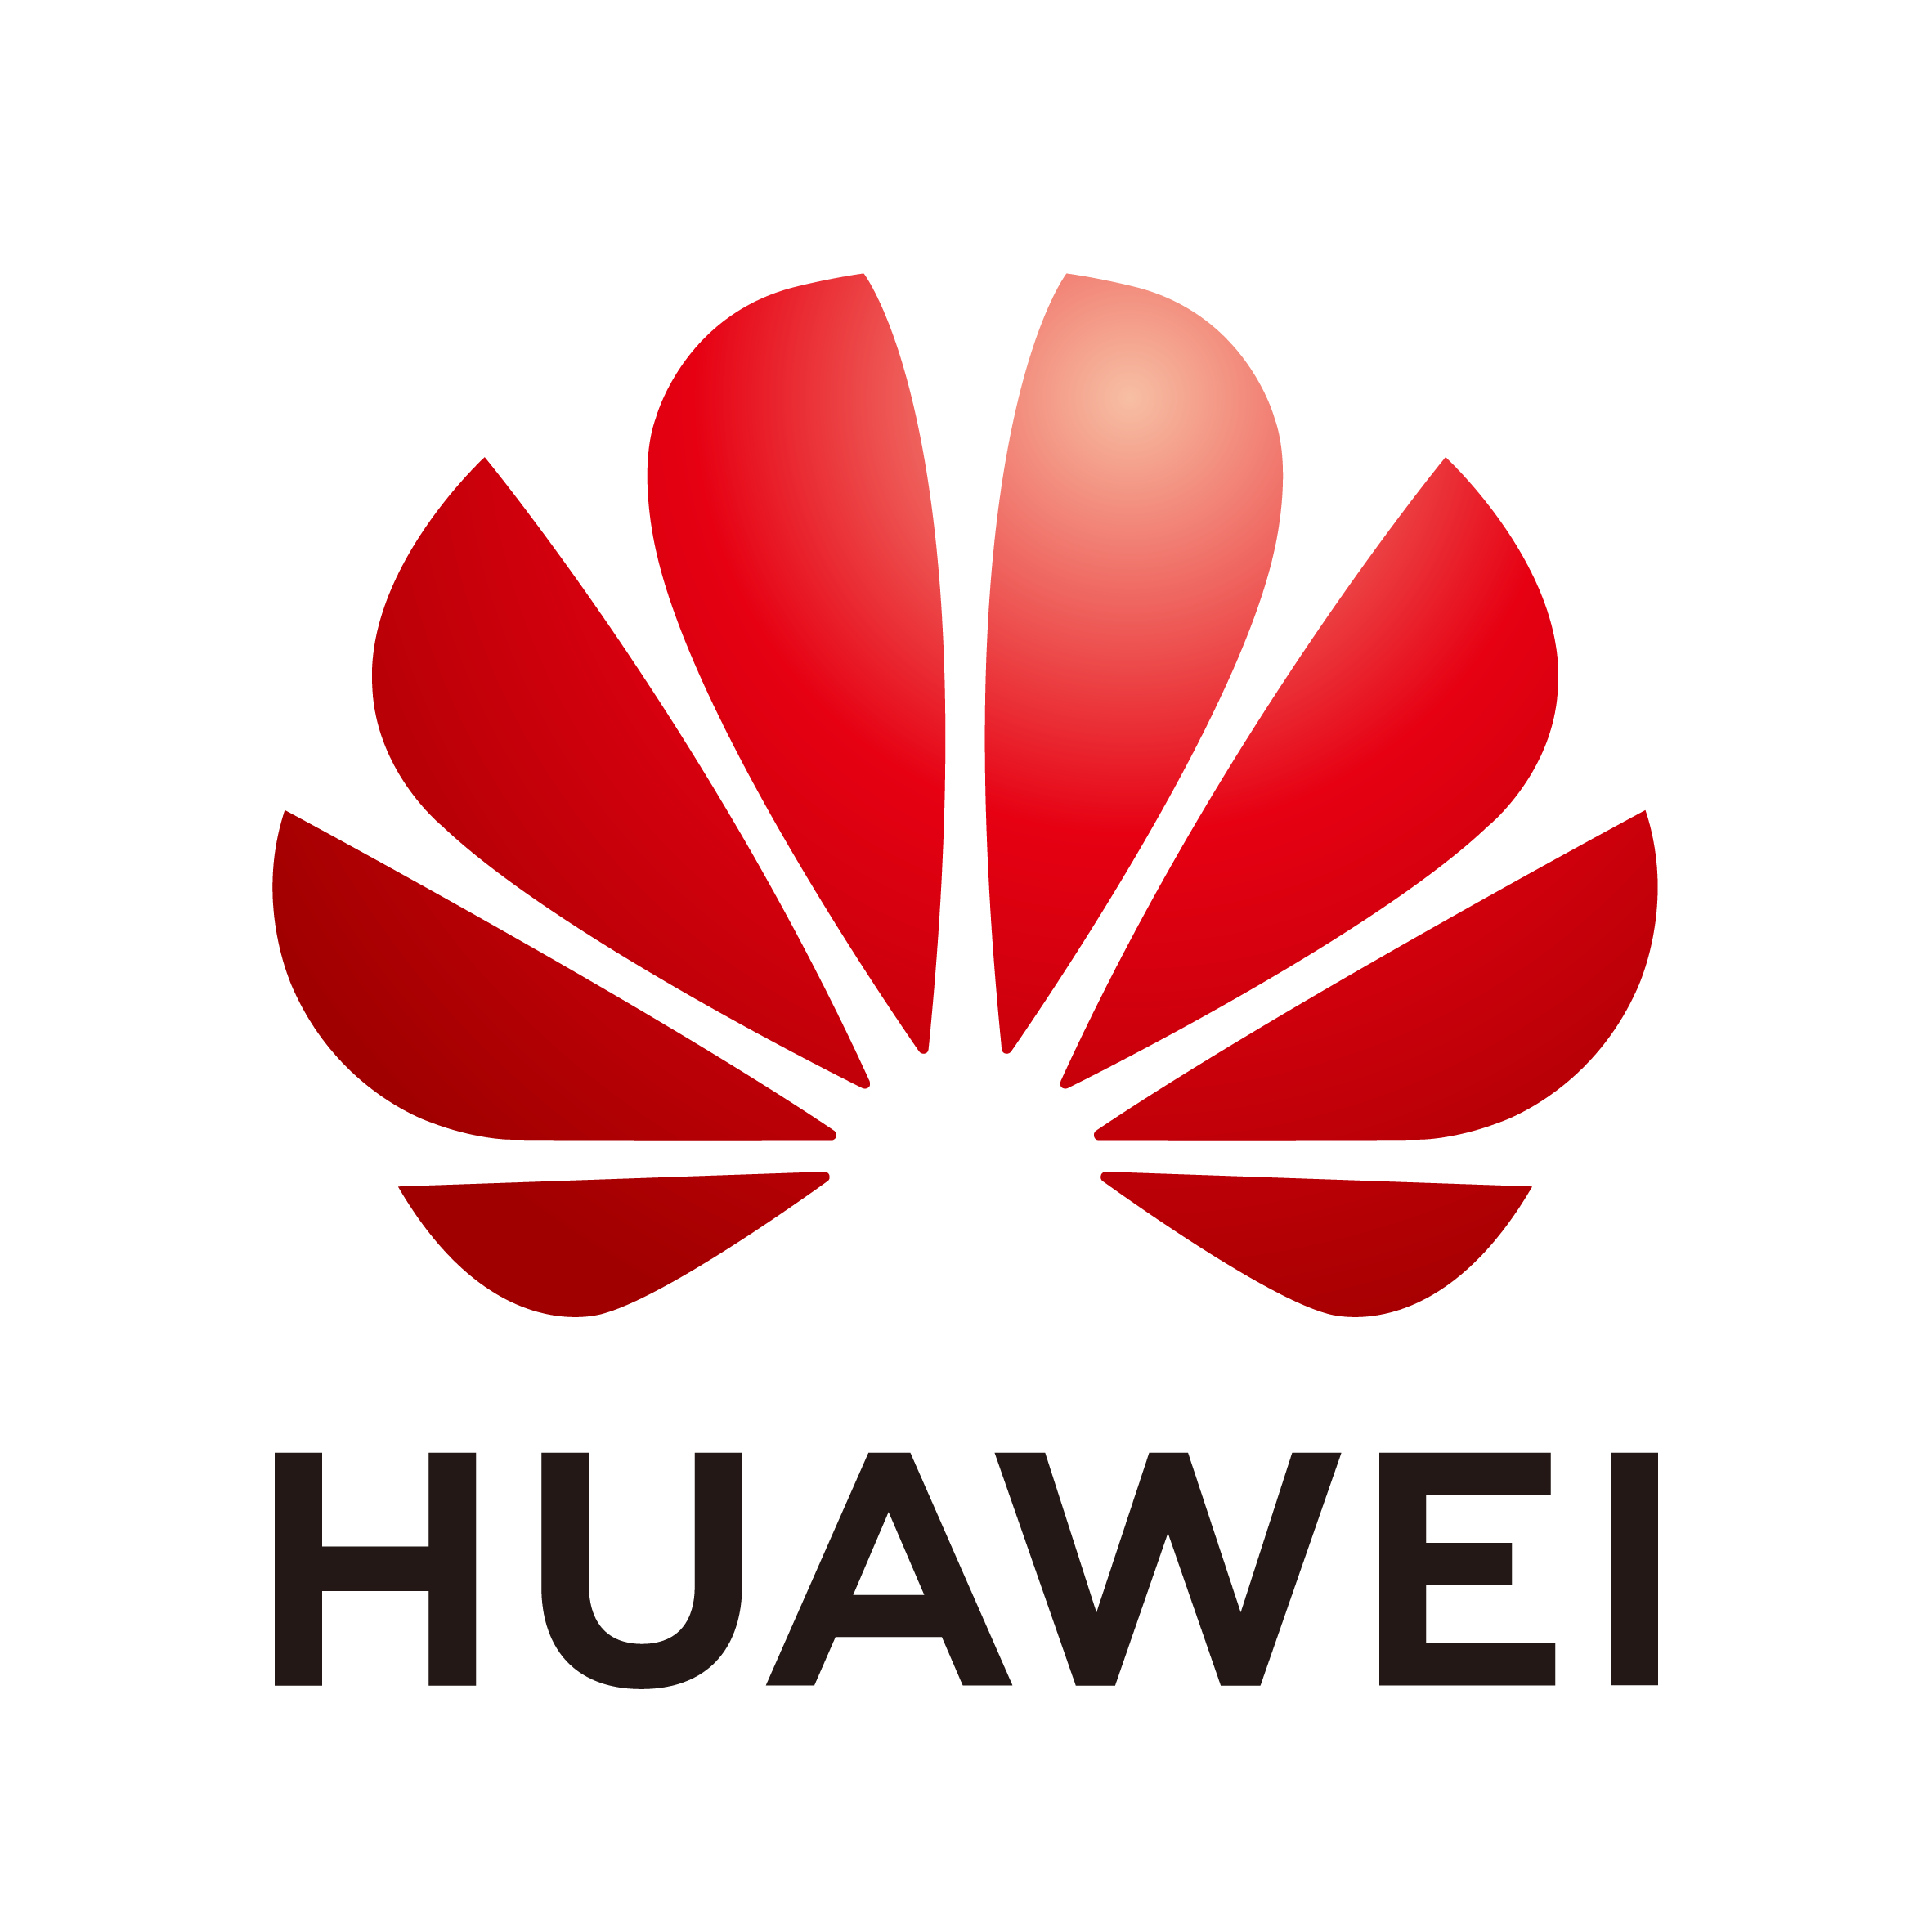 香港電訊, Huawei, 卓越貢獻合作夥伴獎 2021